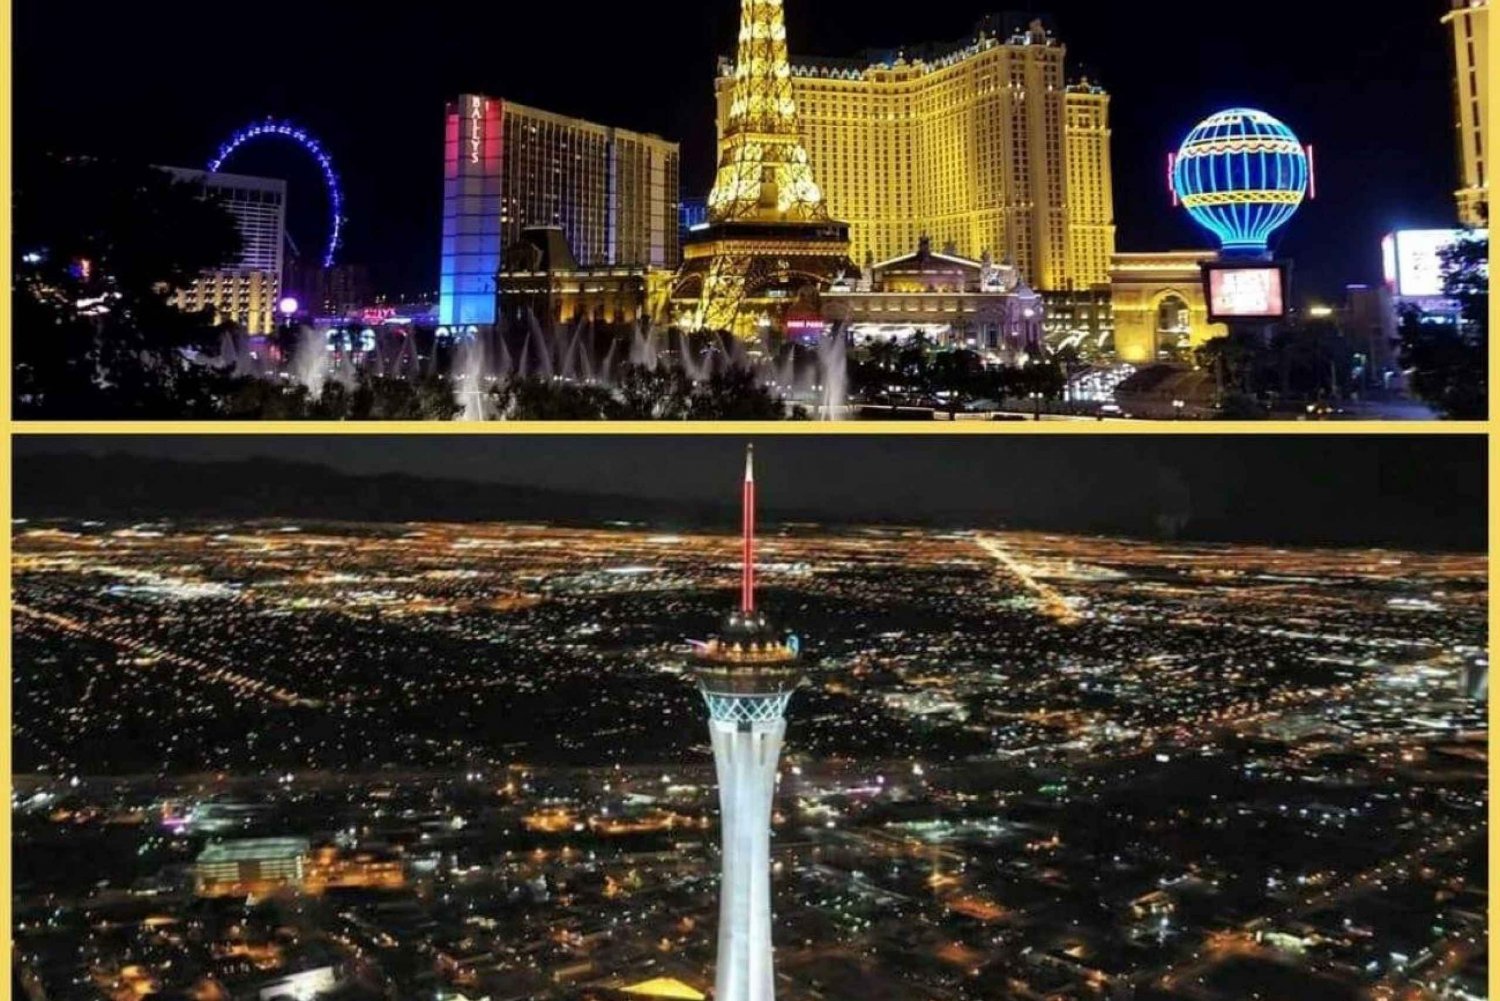 Las Vegas: 3 nætters polterabend-oplevelse